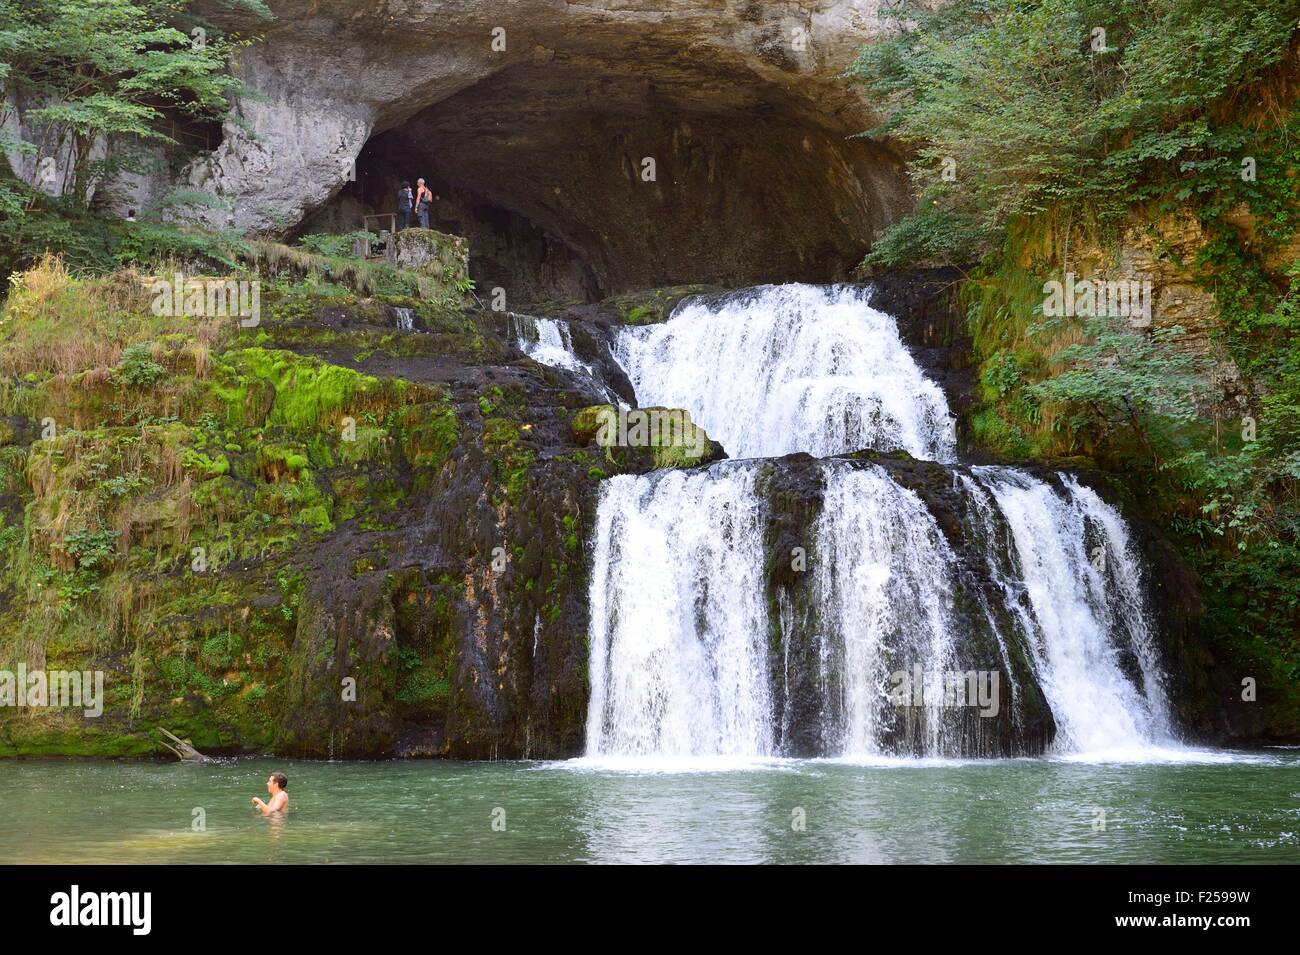 France, Doubs, Nans-sous-Sainte-Anne, waterfall of source du Lison Stock Photo